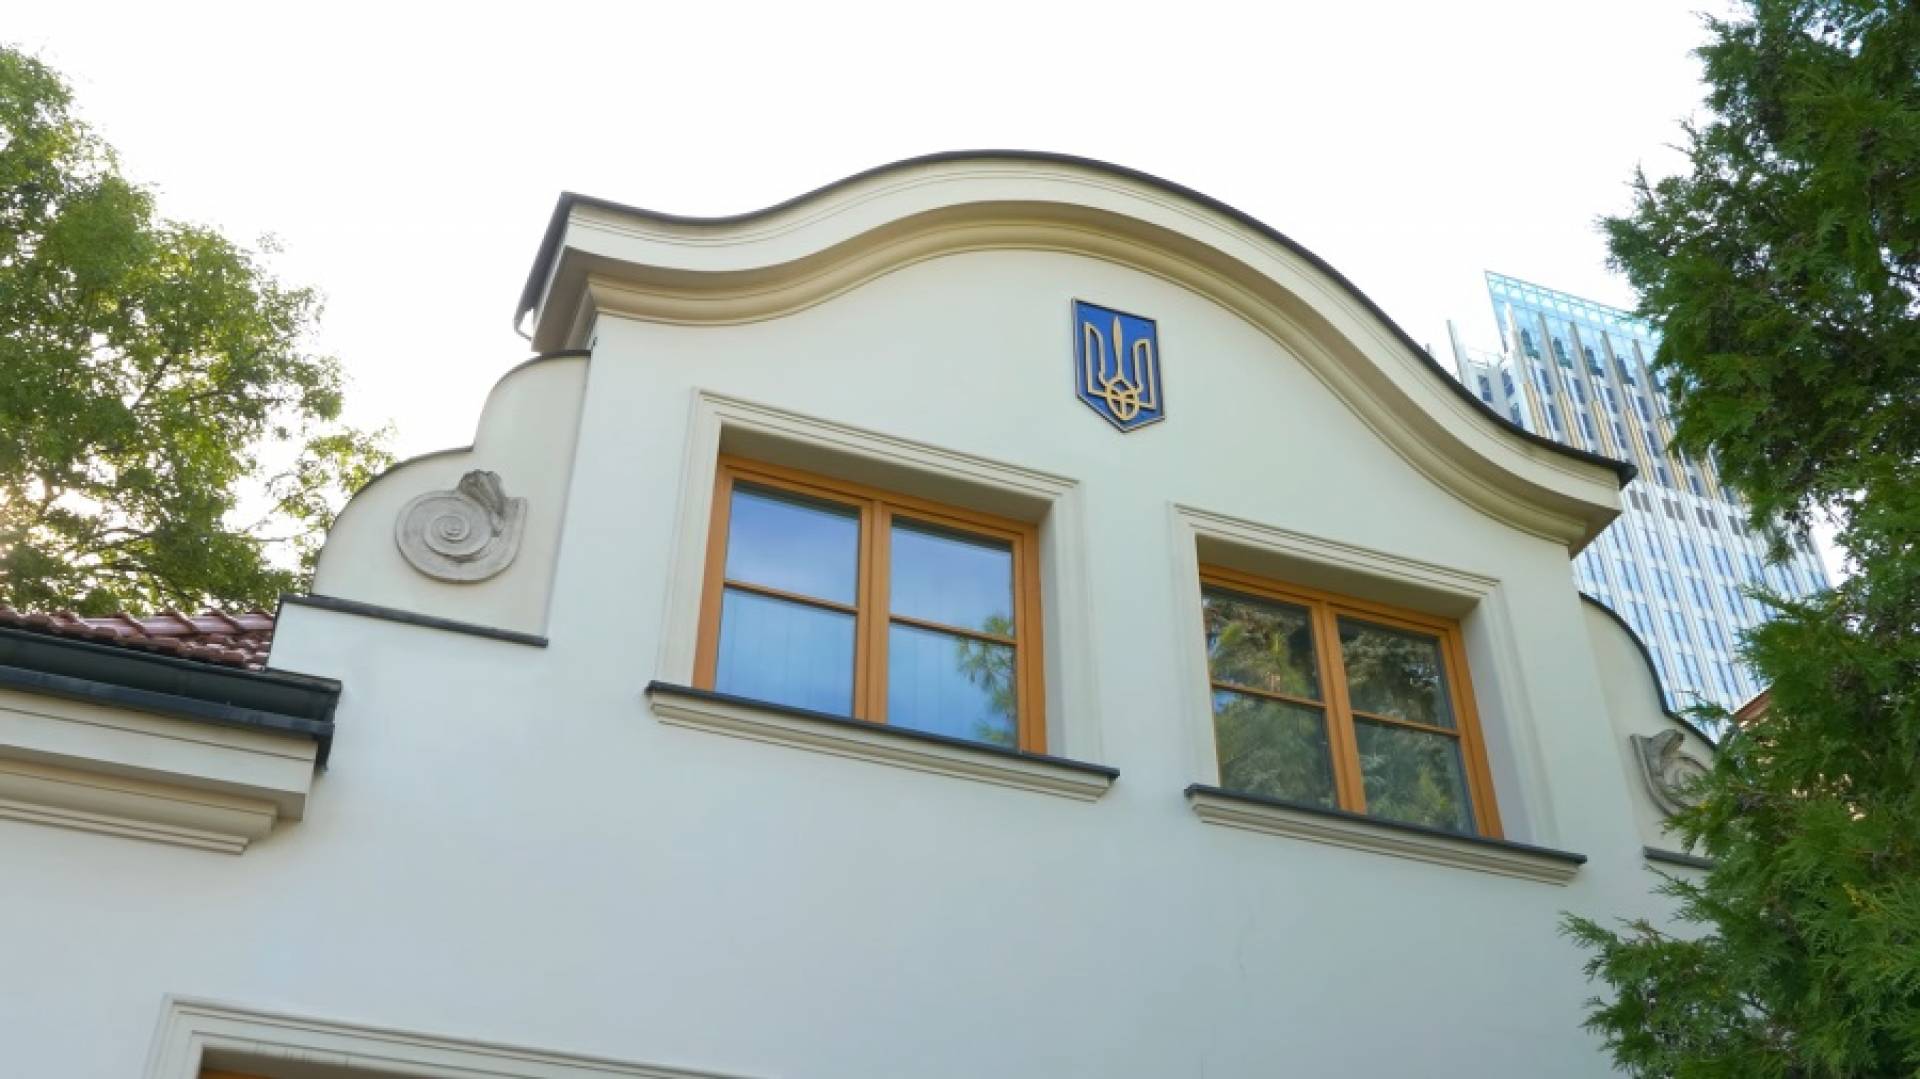 Podejrzana przesyłka w ukraińskim konsulacie w Krakowie. "Silny zapach"